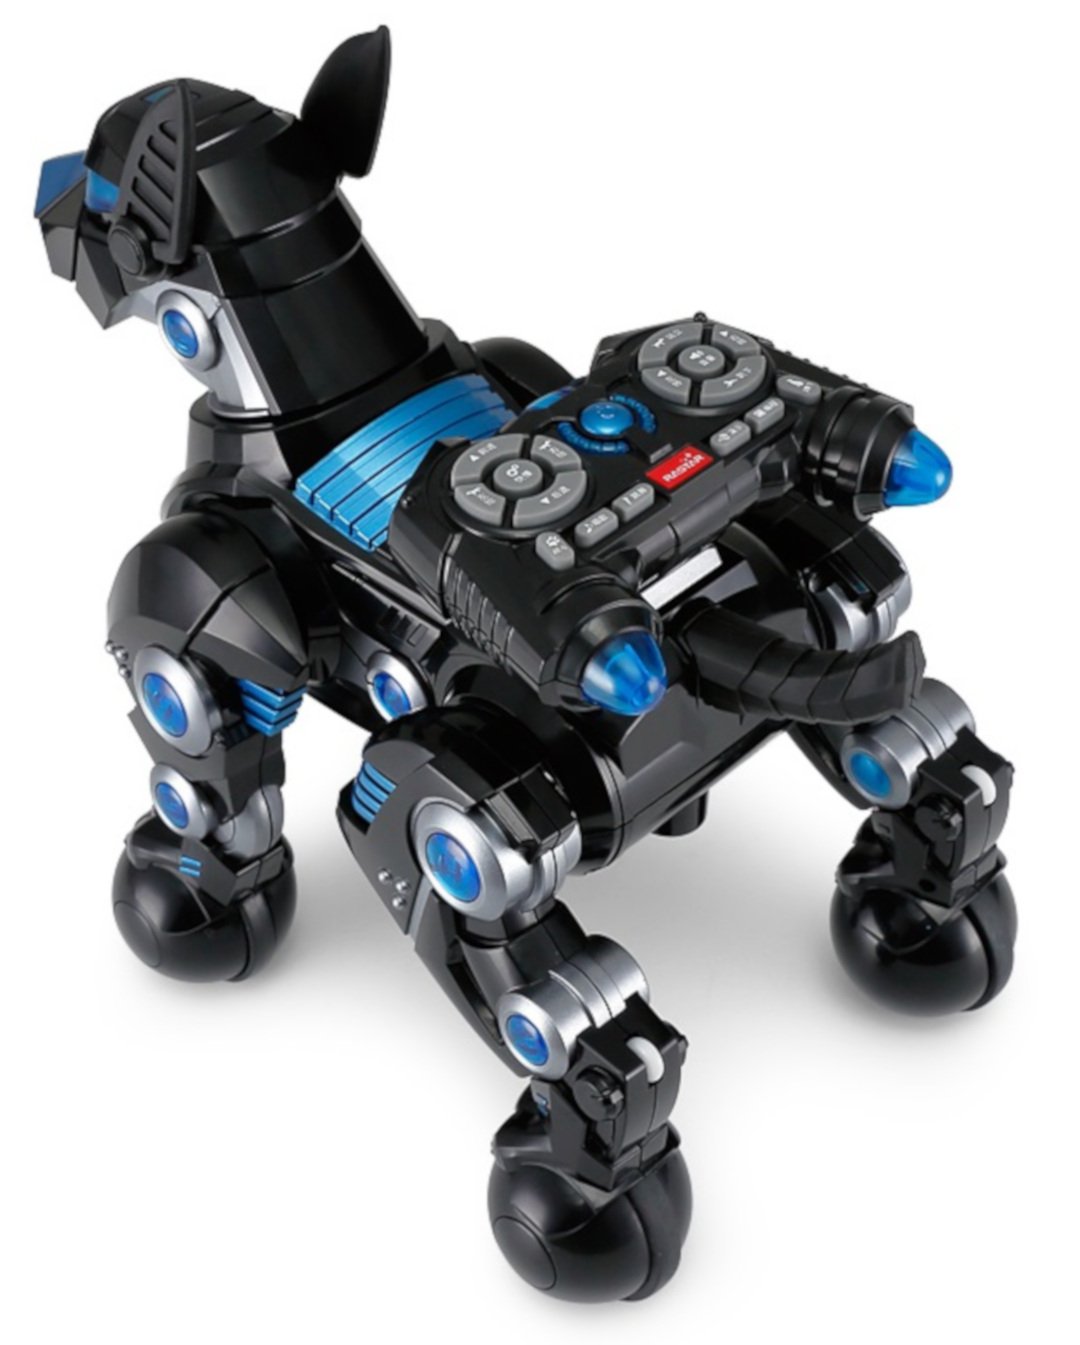 Hund DOGO Rastar - Interaktiver Roboterhund 1:14 - schwarz